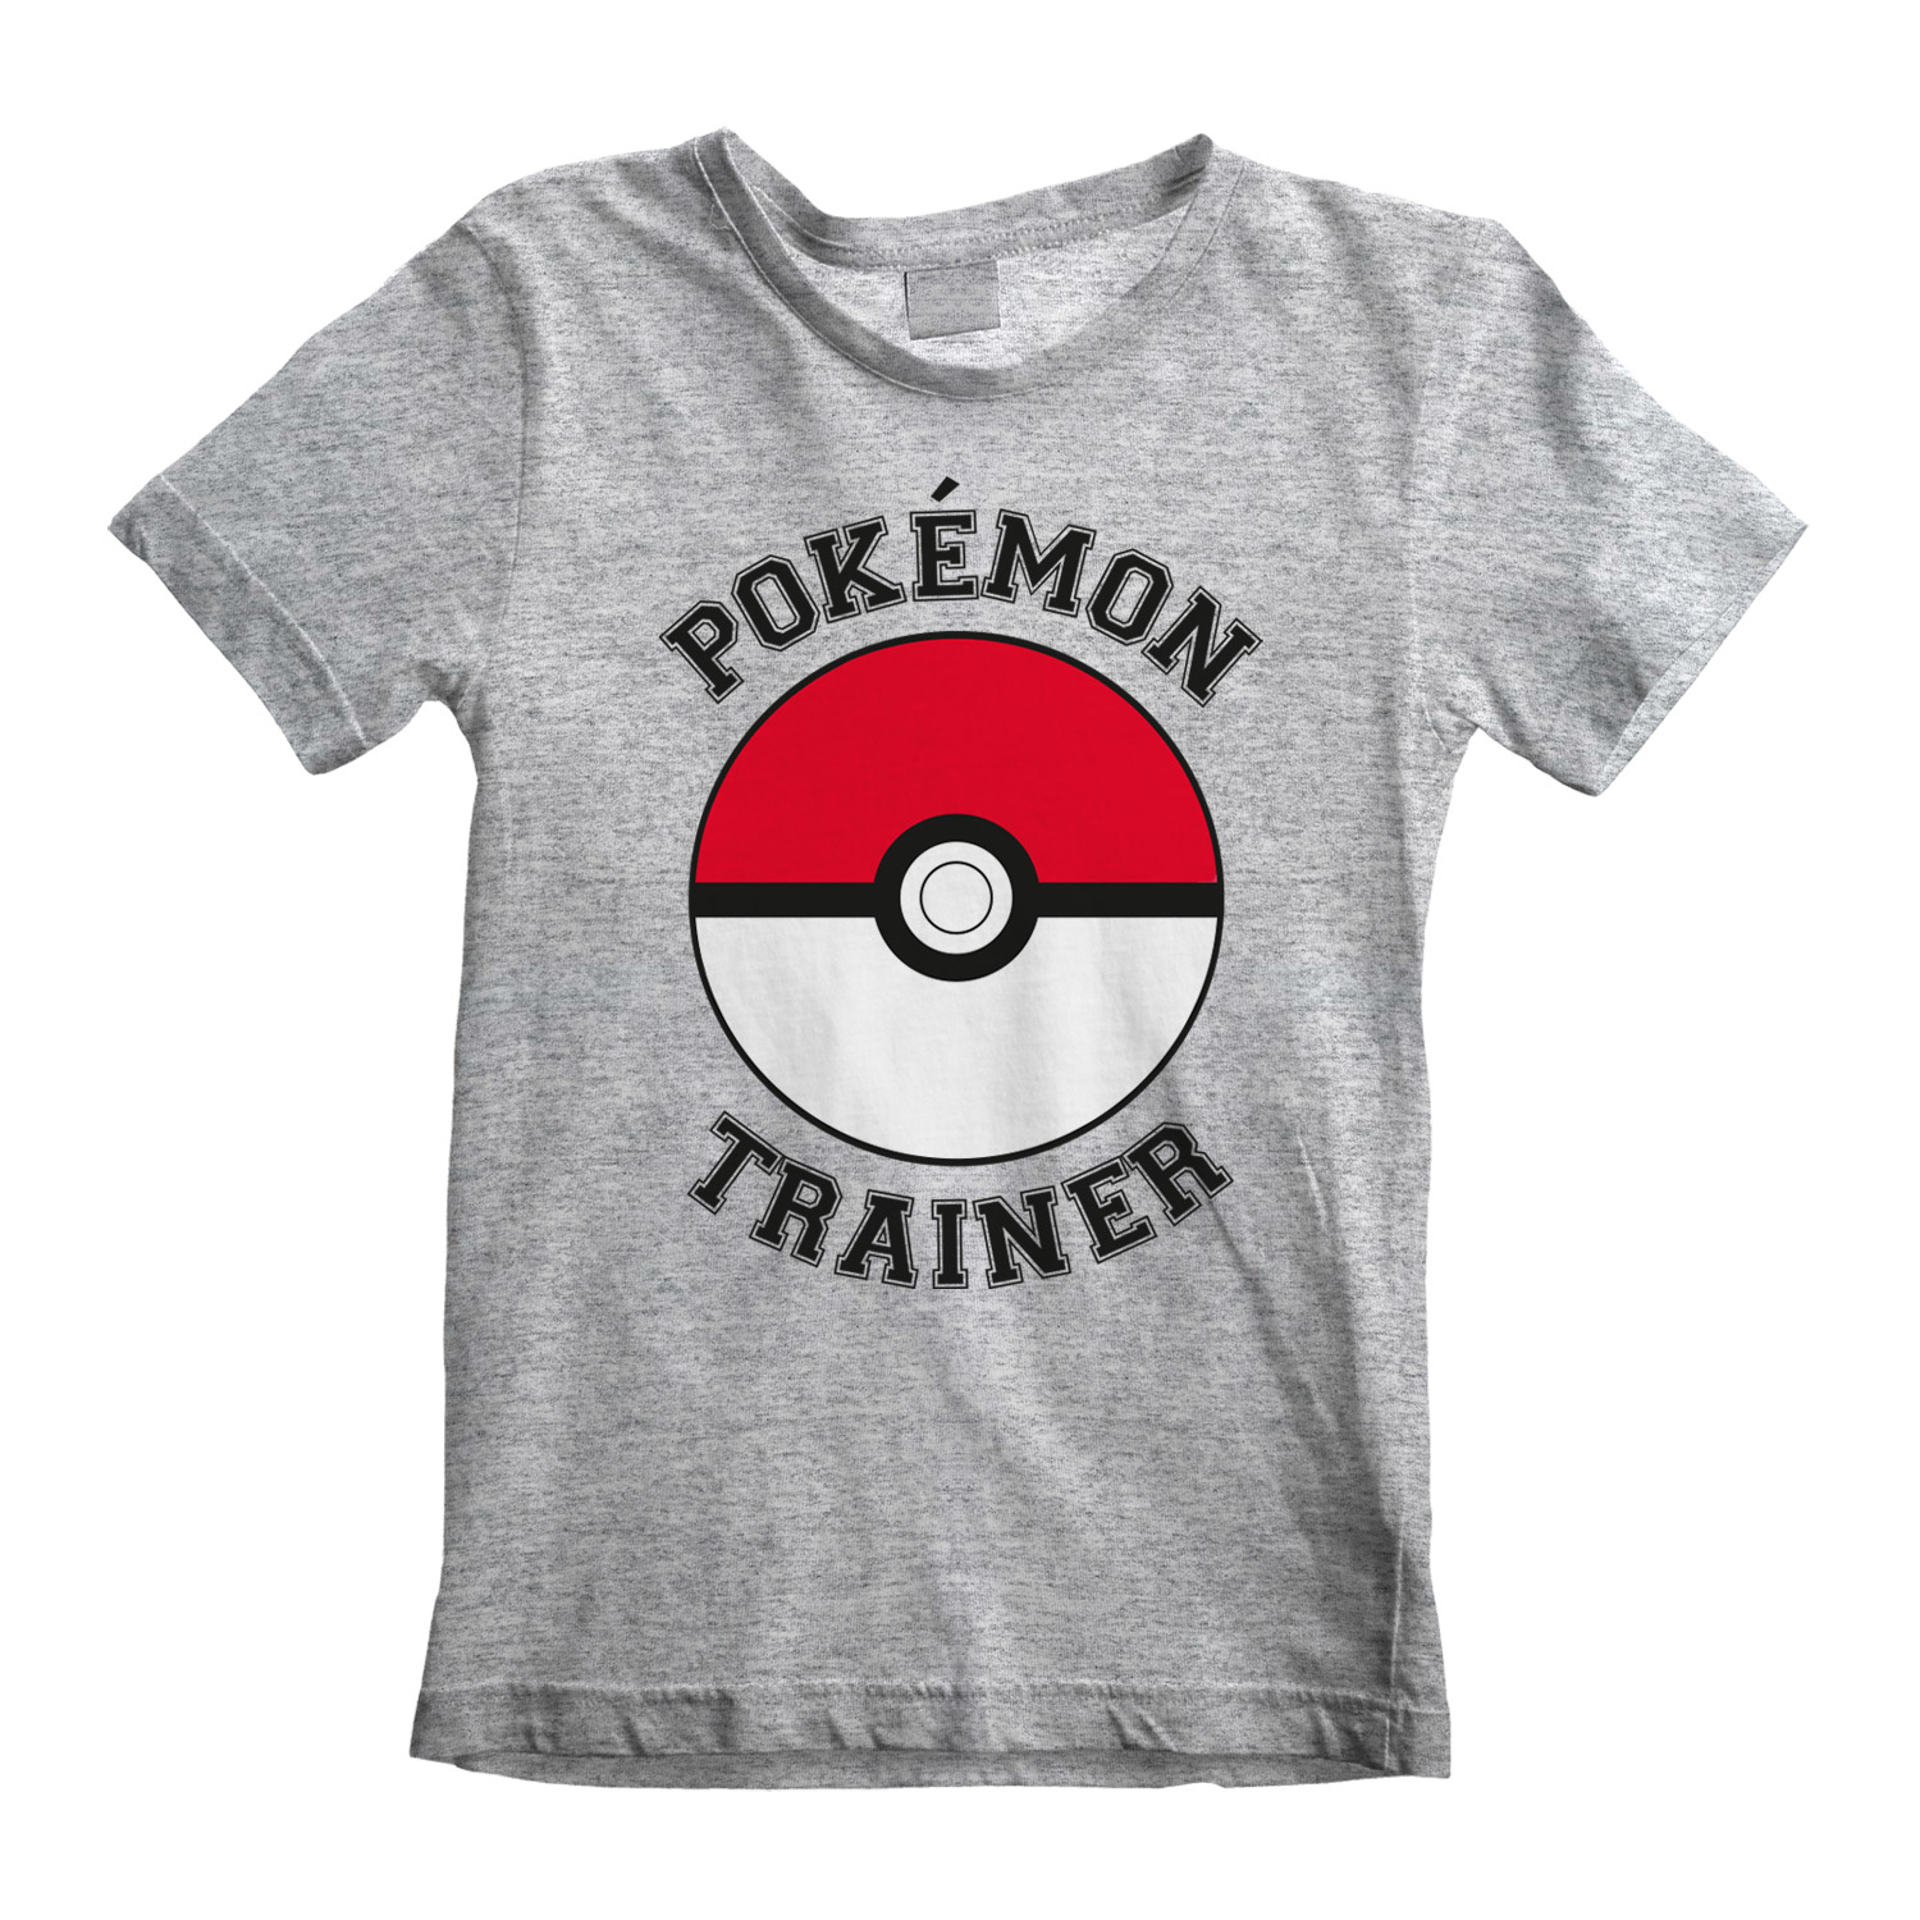 Nintendo - T-shirt Enfant Gris chiné Pokémon Entraîneur - 7-8 ans